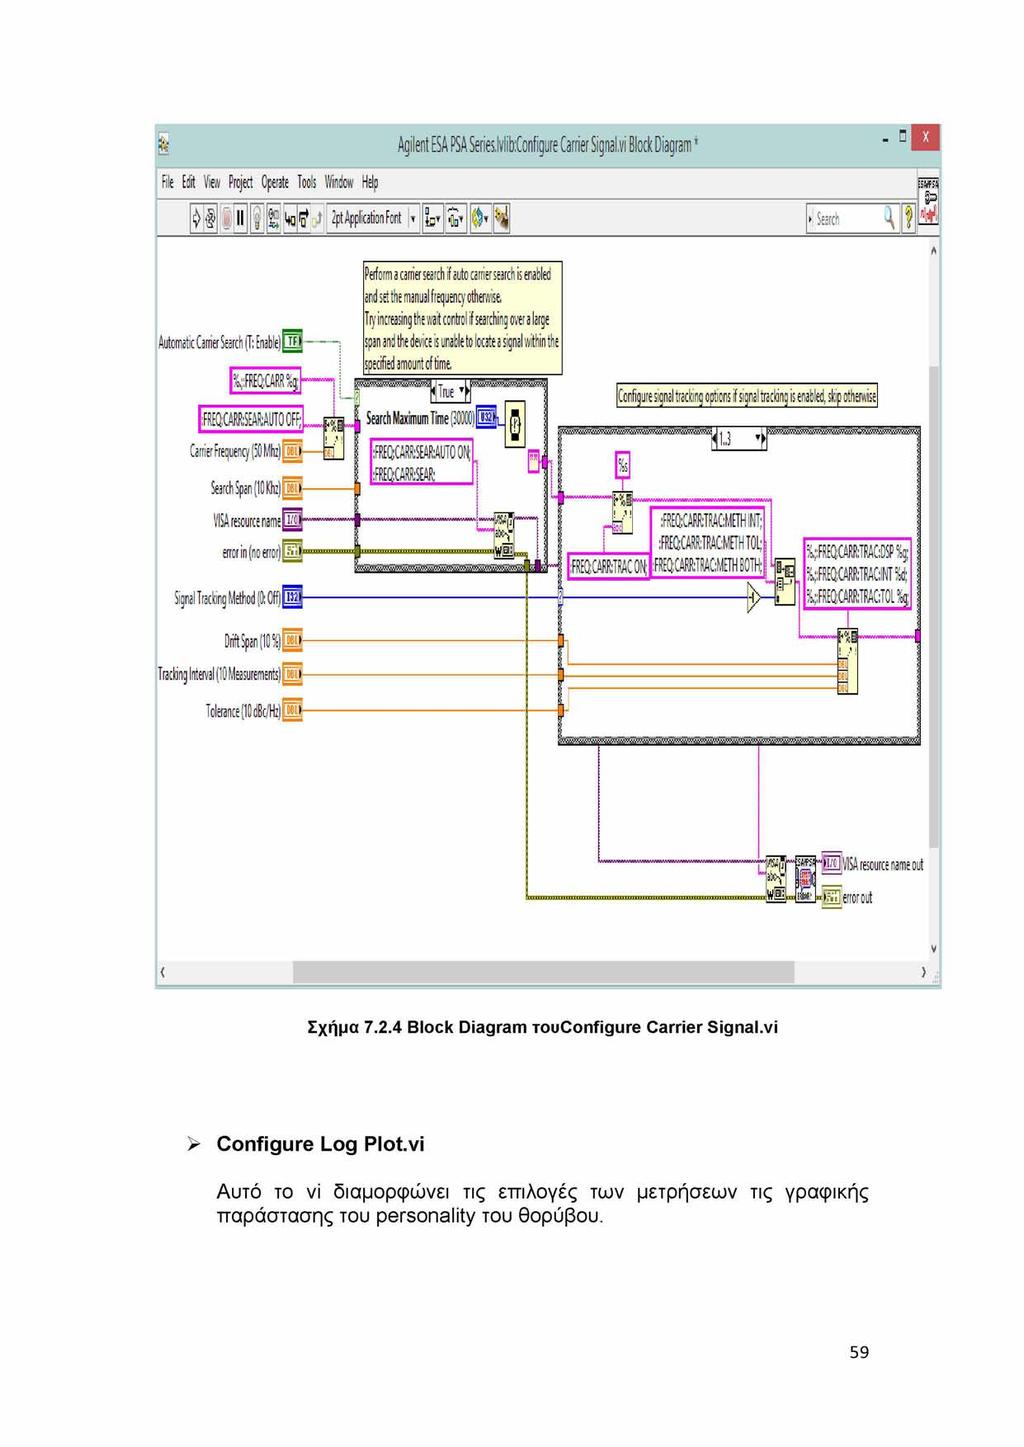 Σχήμα 7.2.4 Block Diagram TOuConfigure Carrier Signal.vi > Configure Log Plot.